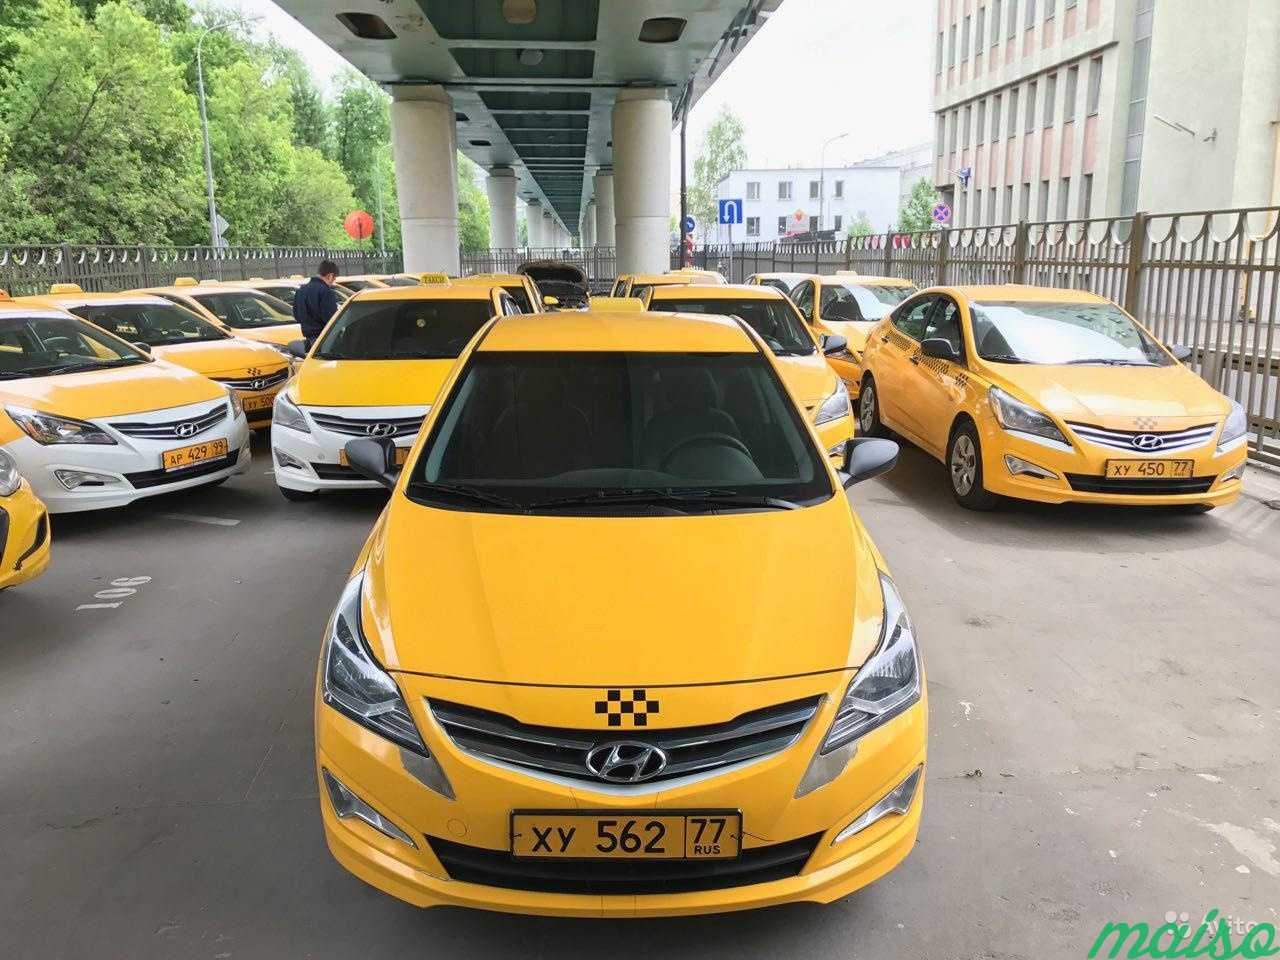 Таксомотор аренда. Хендай Соната такси комфорт. Солярис желтый такси. Хендай Солярис такси. Желтая машина такси.